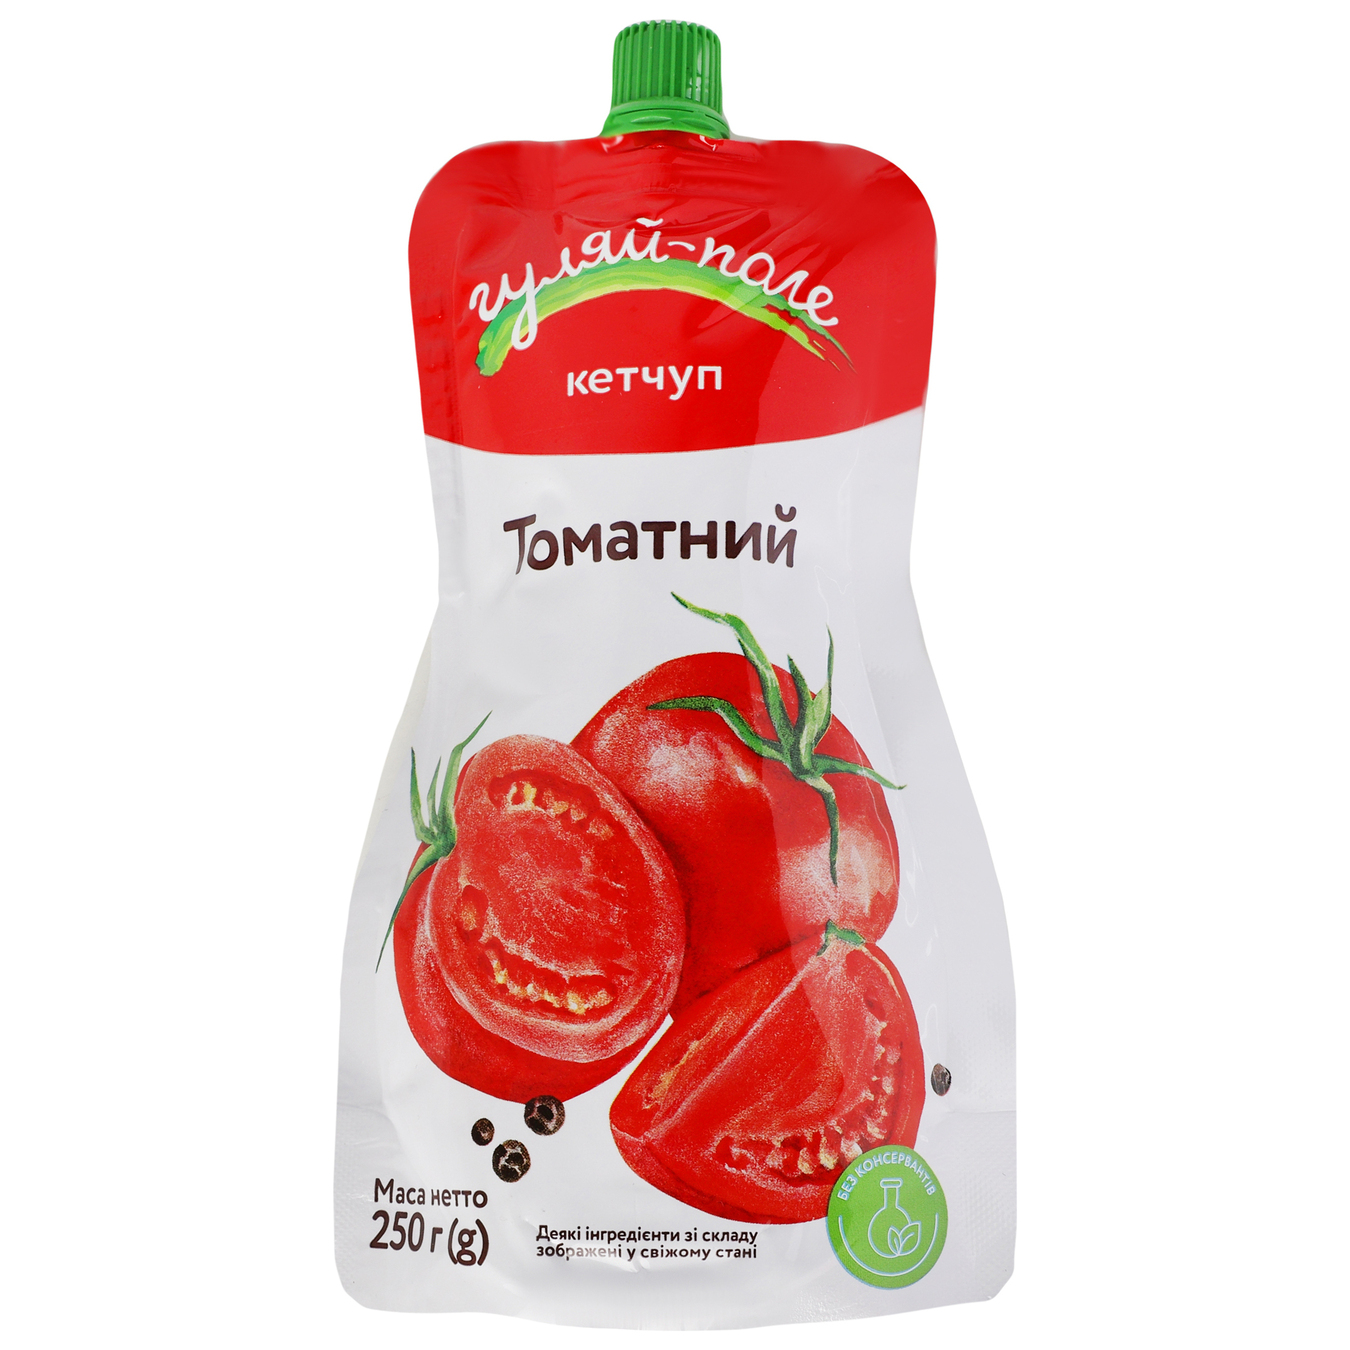 Ketchup Gulyai field Tomato doi-pak 250g